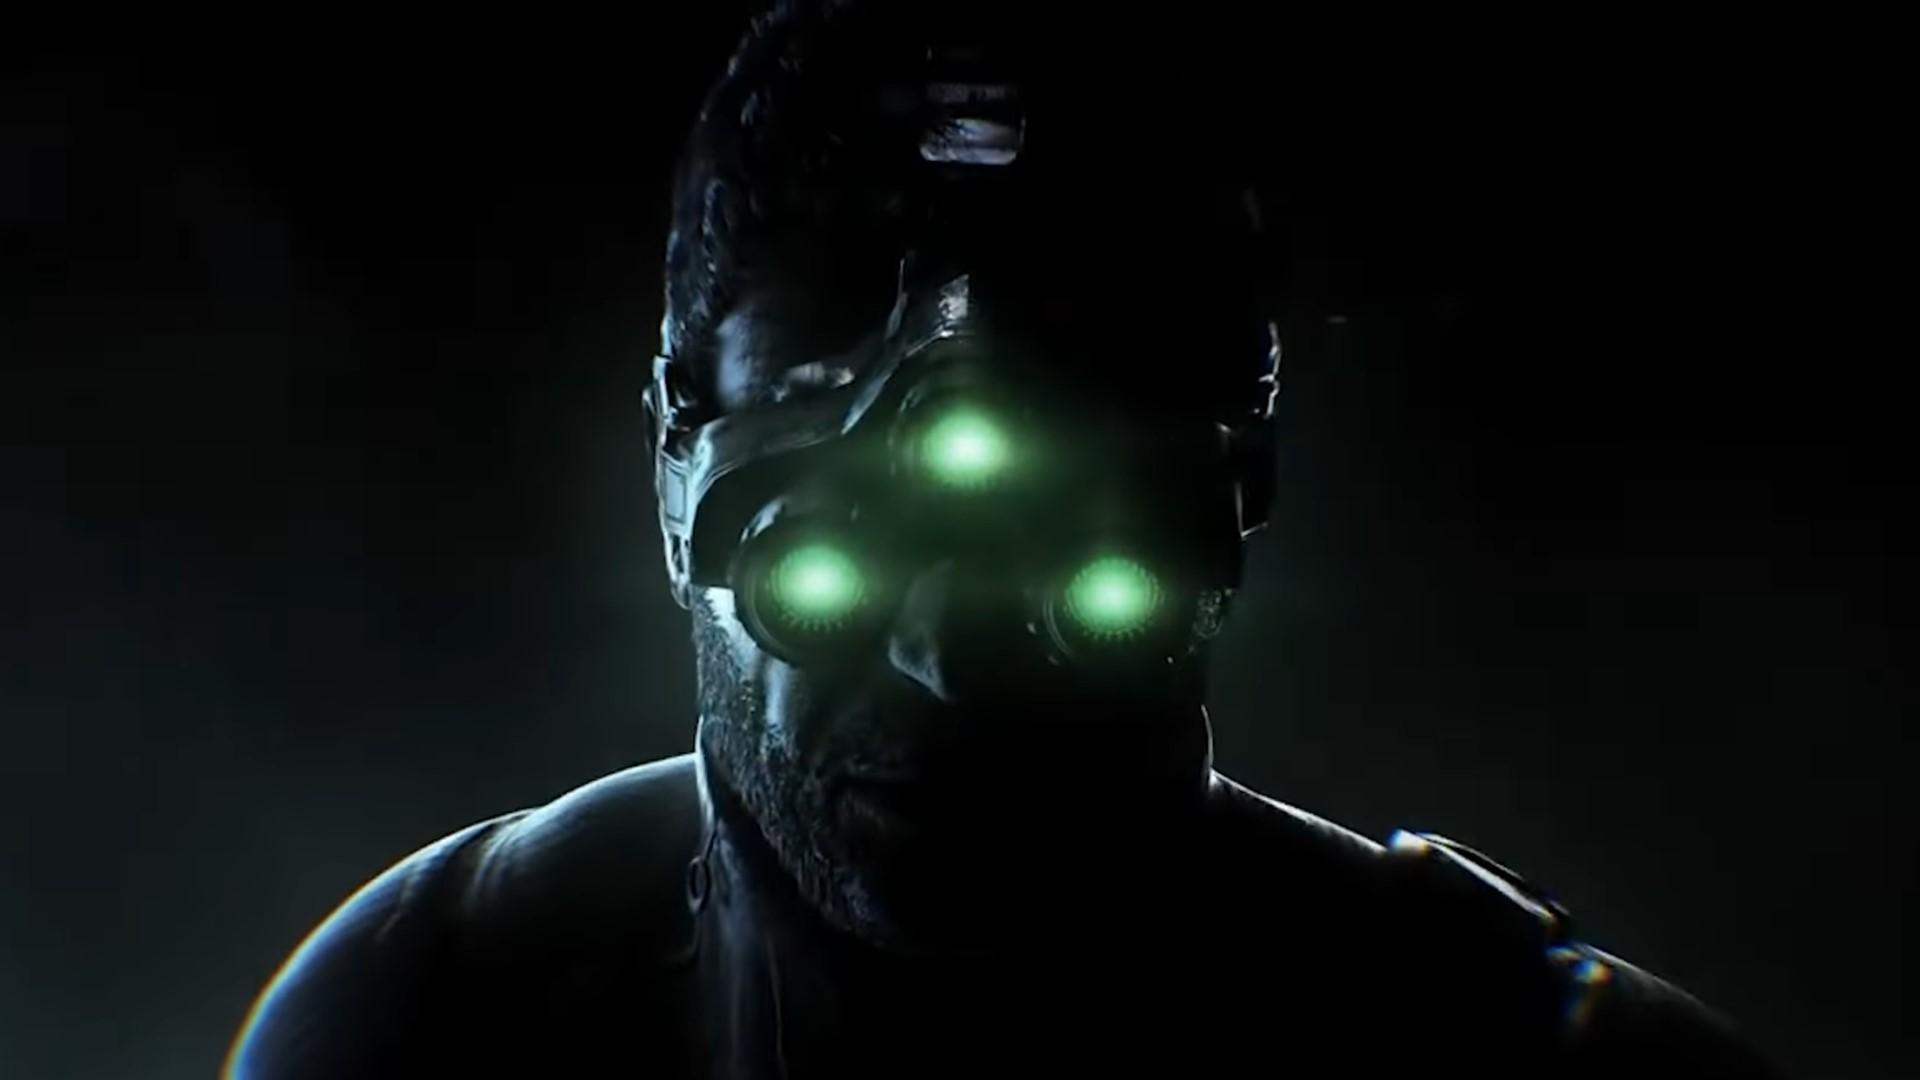 Splinter Cell remake director leaves Ubisoft